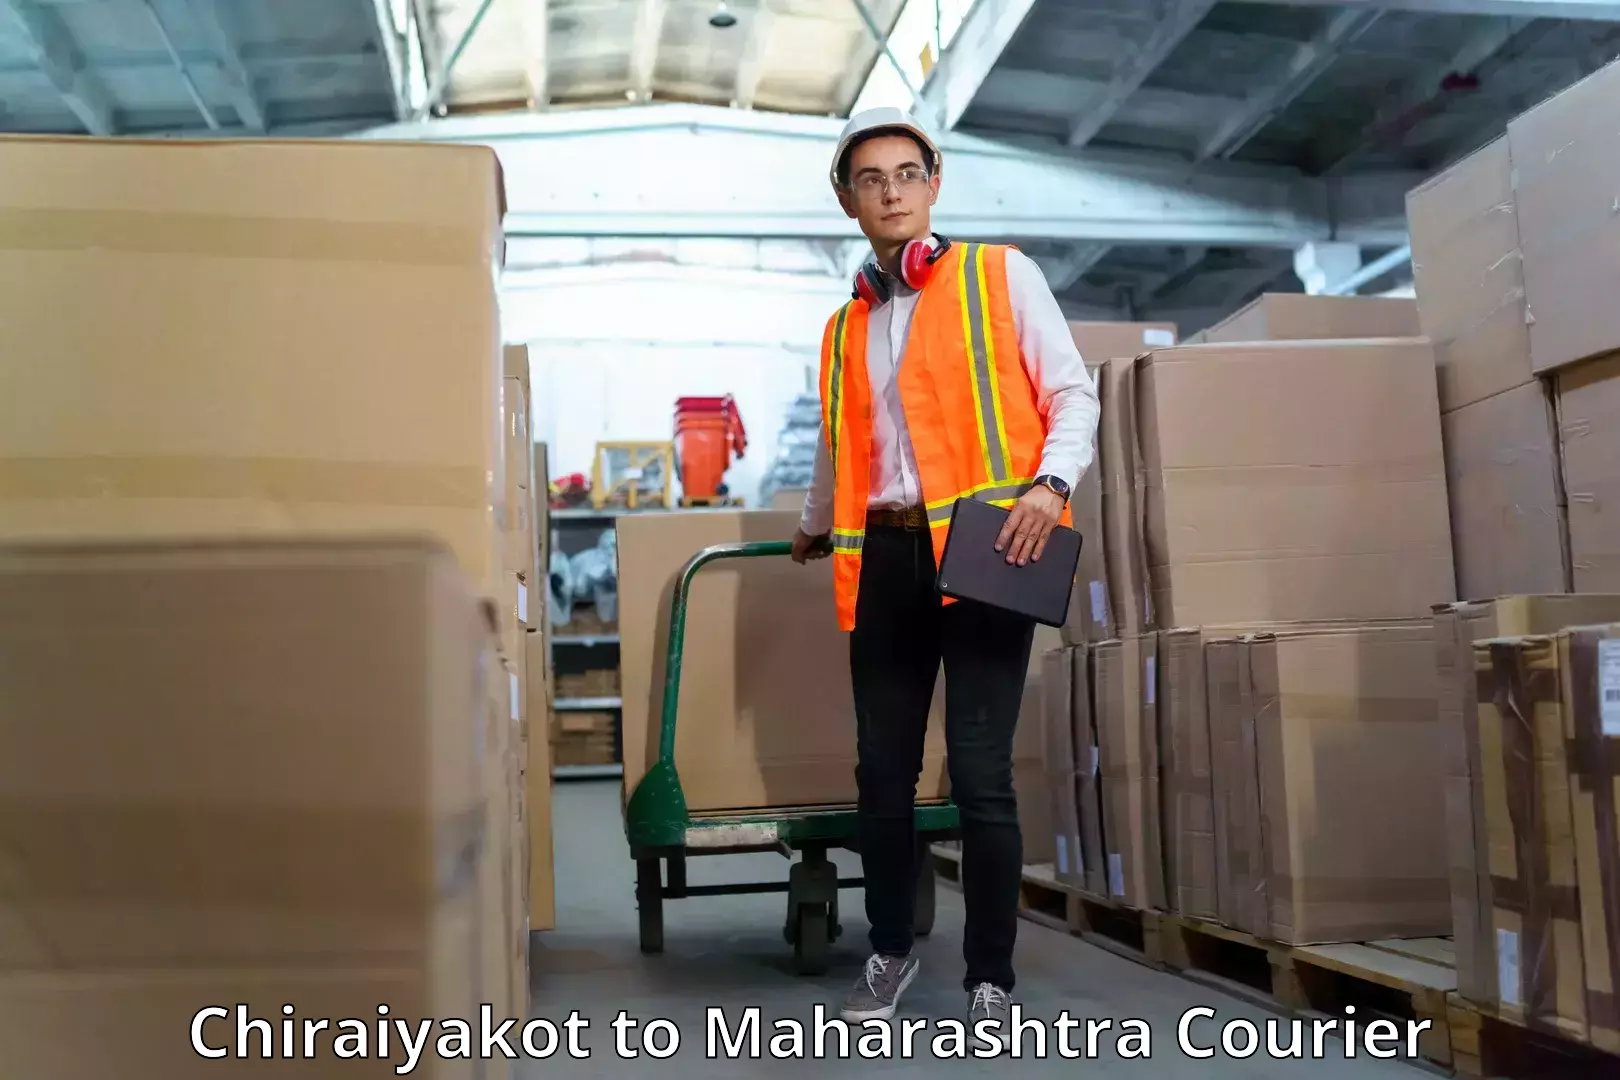 Corporate courier solutions Chiraiyakot to Aurangabad